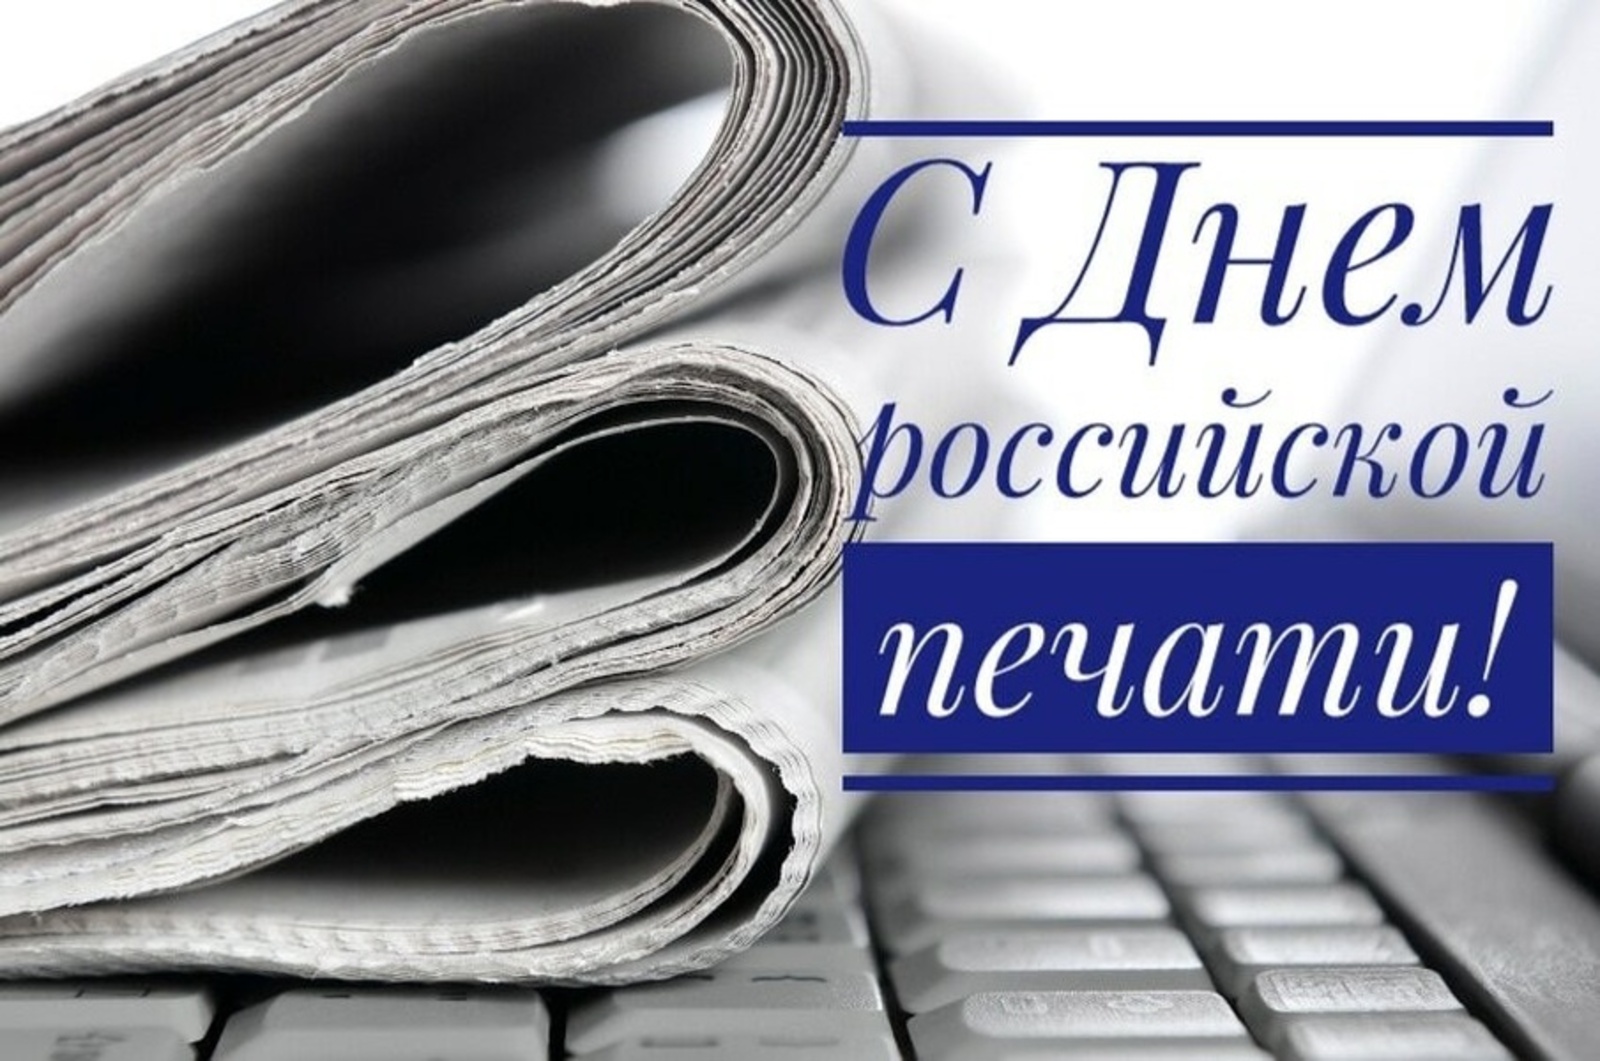 Сегодня профессиональный праздник у работников СМИ - День российской печати